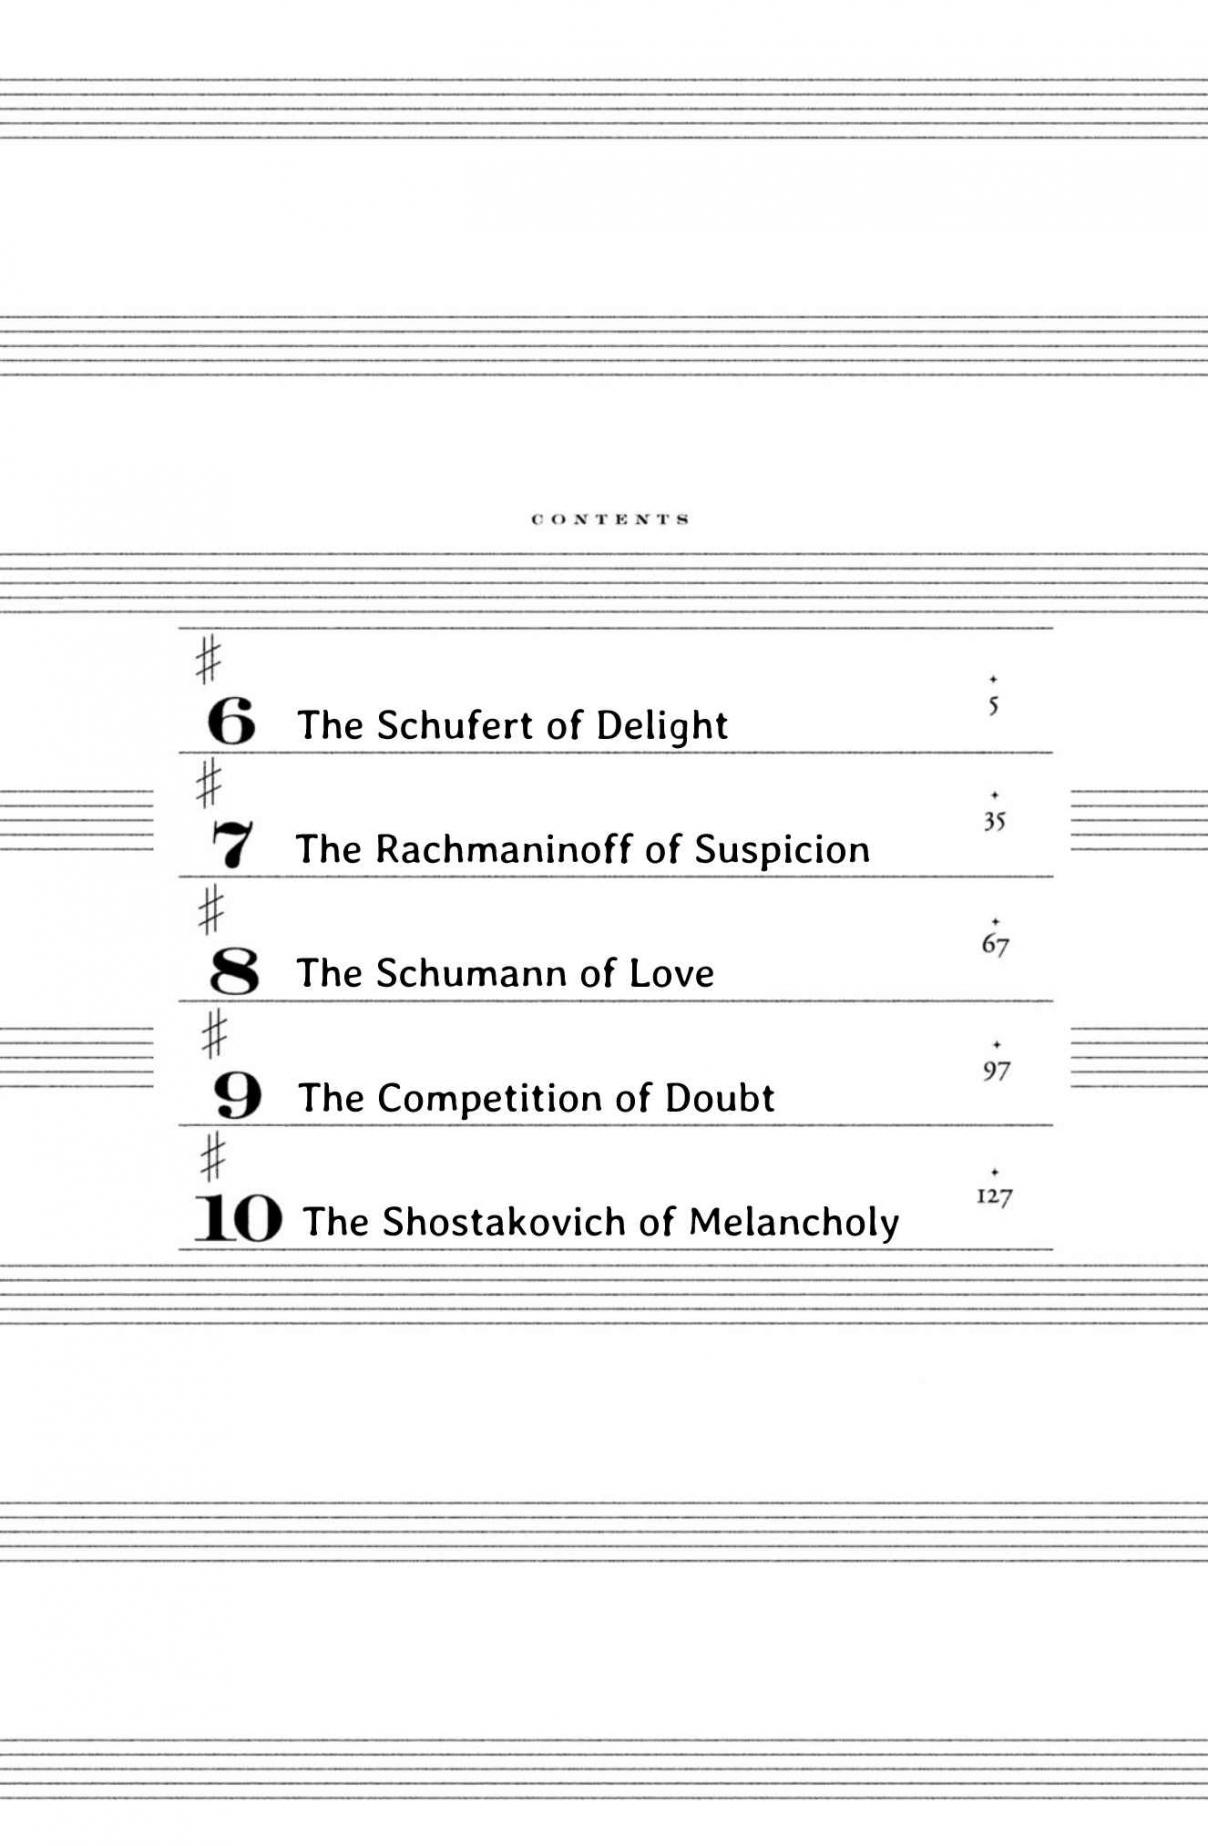 Yonimo Fujitsu na Piano Sonata Vol. 2 Ch. 6 The Schufert of Delight